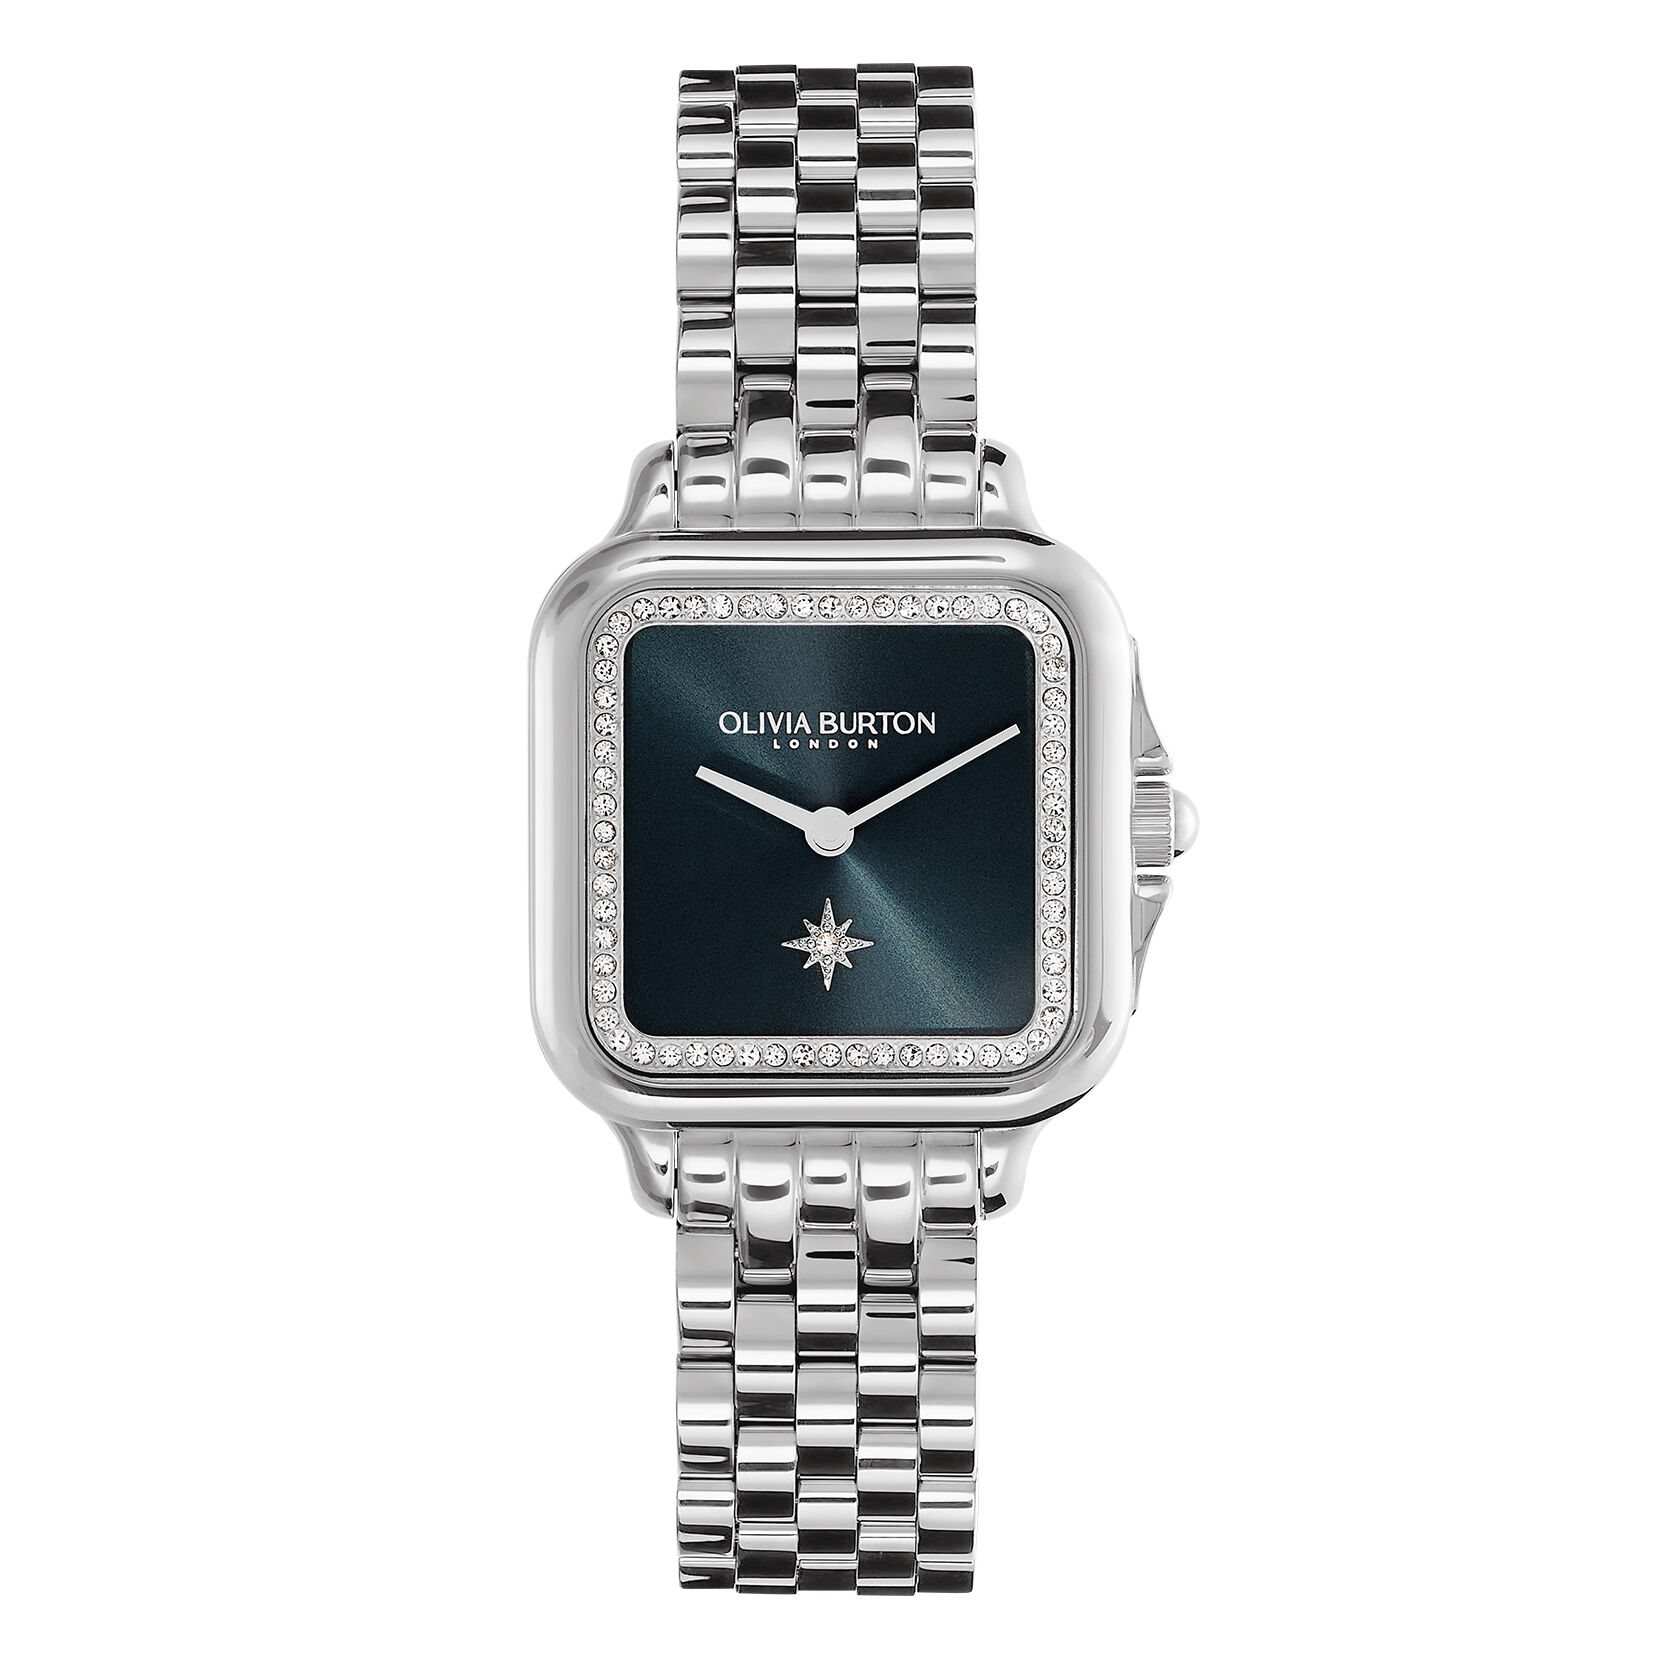 オリビアバートン 正規品 腕時計 レインボー ベゼル&ローズゴールド